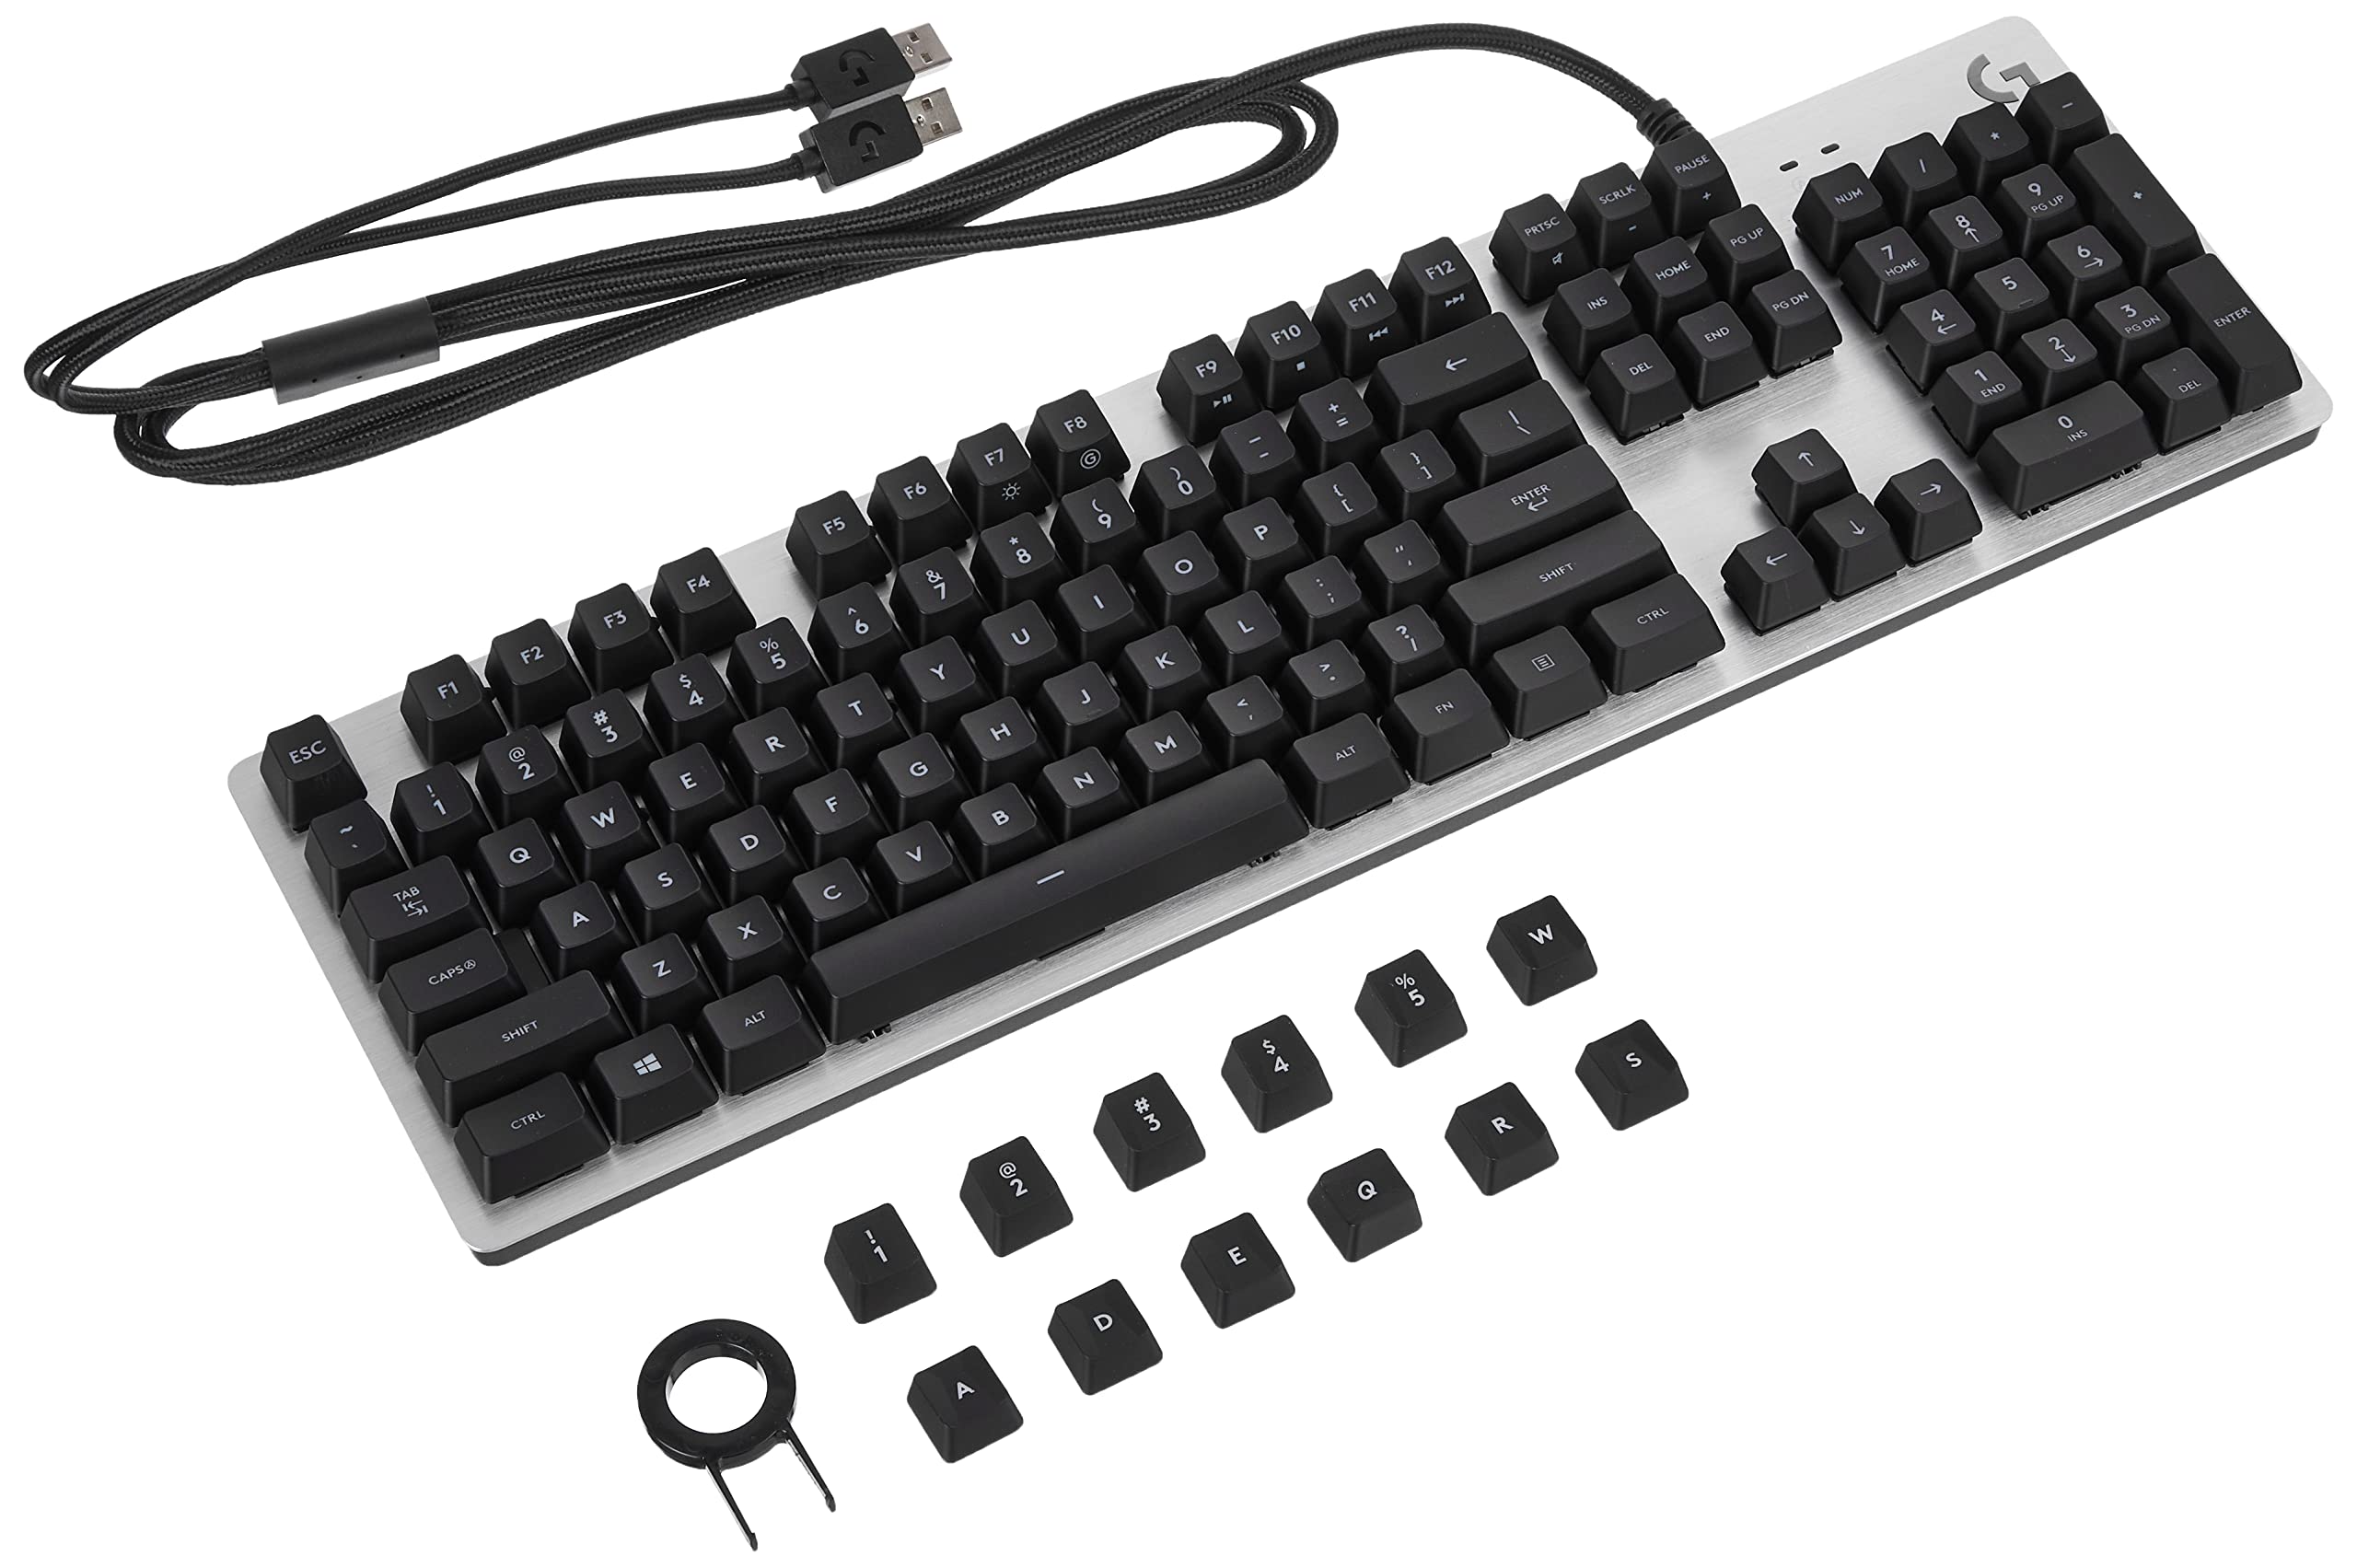 G413 Mechanical Gaming Keyboard (920-008309)